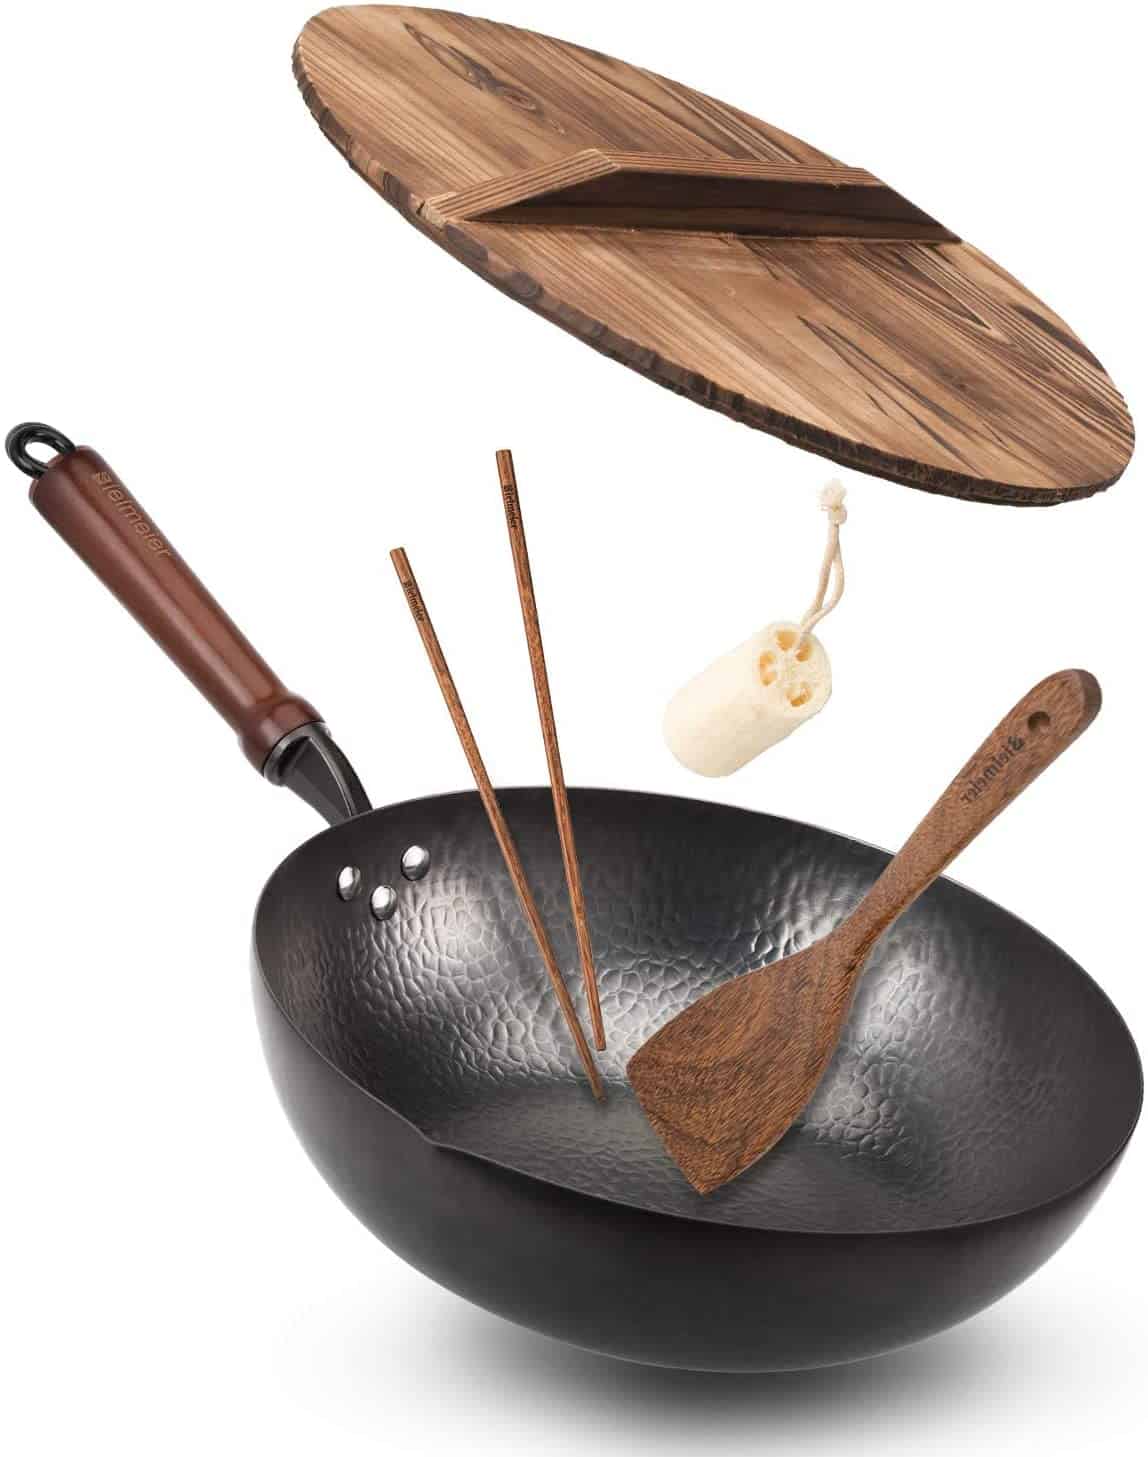 El mejor wok de acero al carbono con fondo plano y el mejor con tapa y el mejor apto para horno - Bielmeier Wok Pan